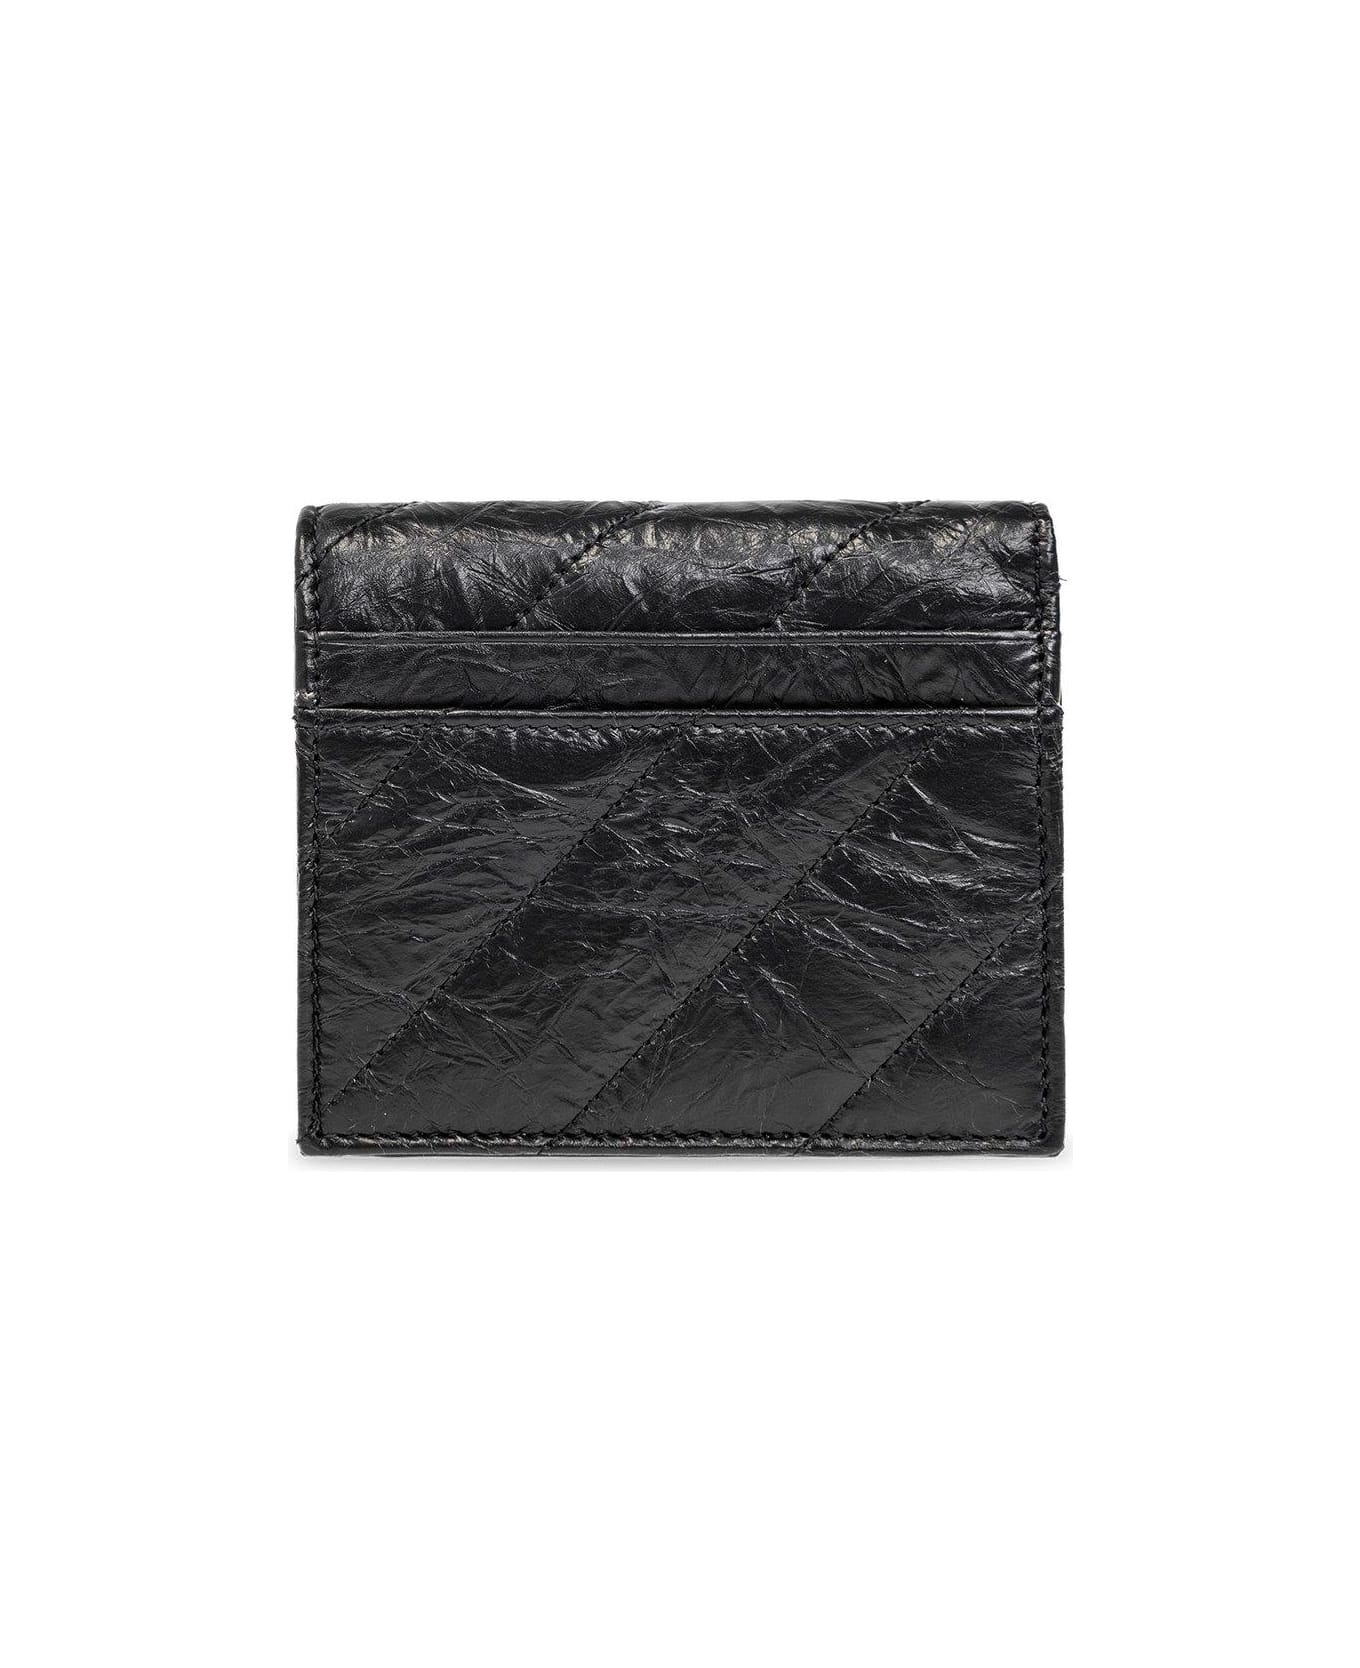 Balenciaga Crush Logo Plaque Wallet - Black 財布